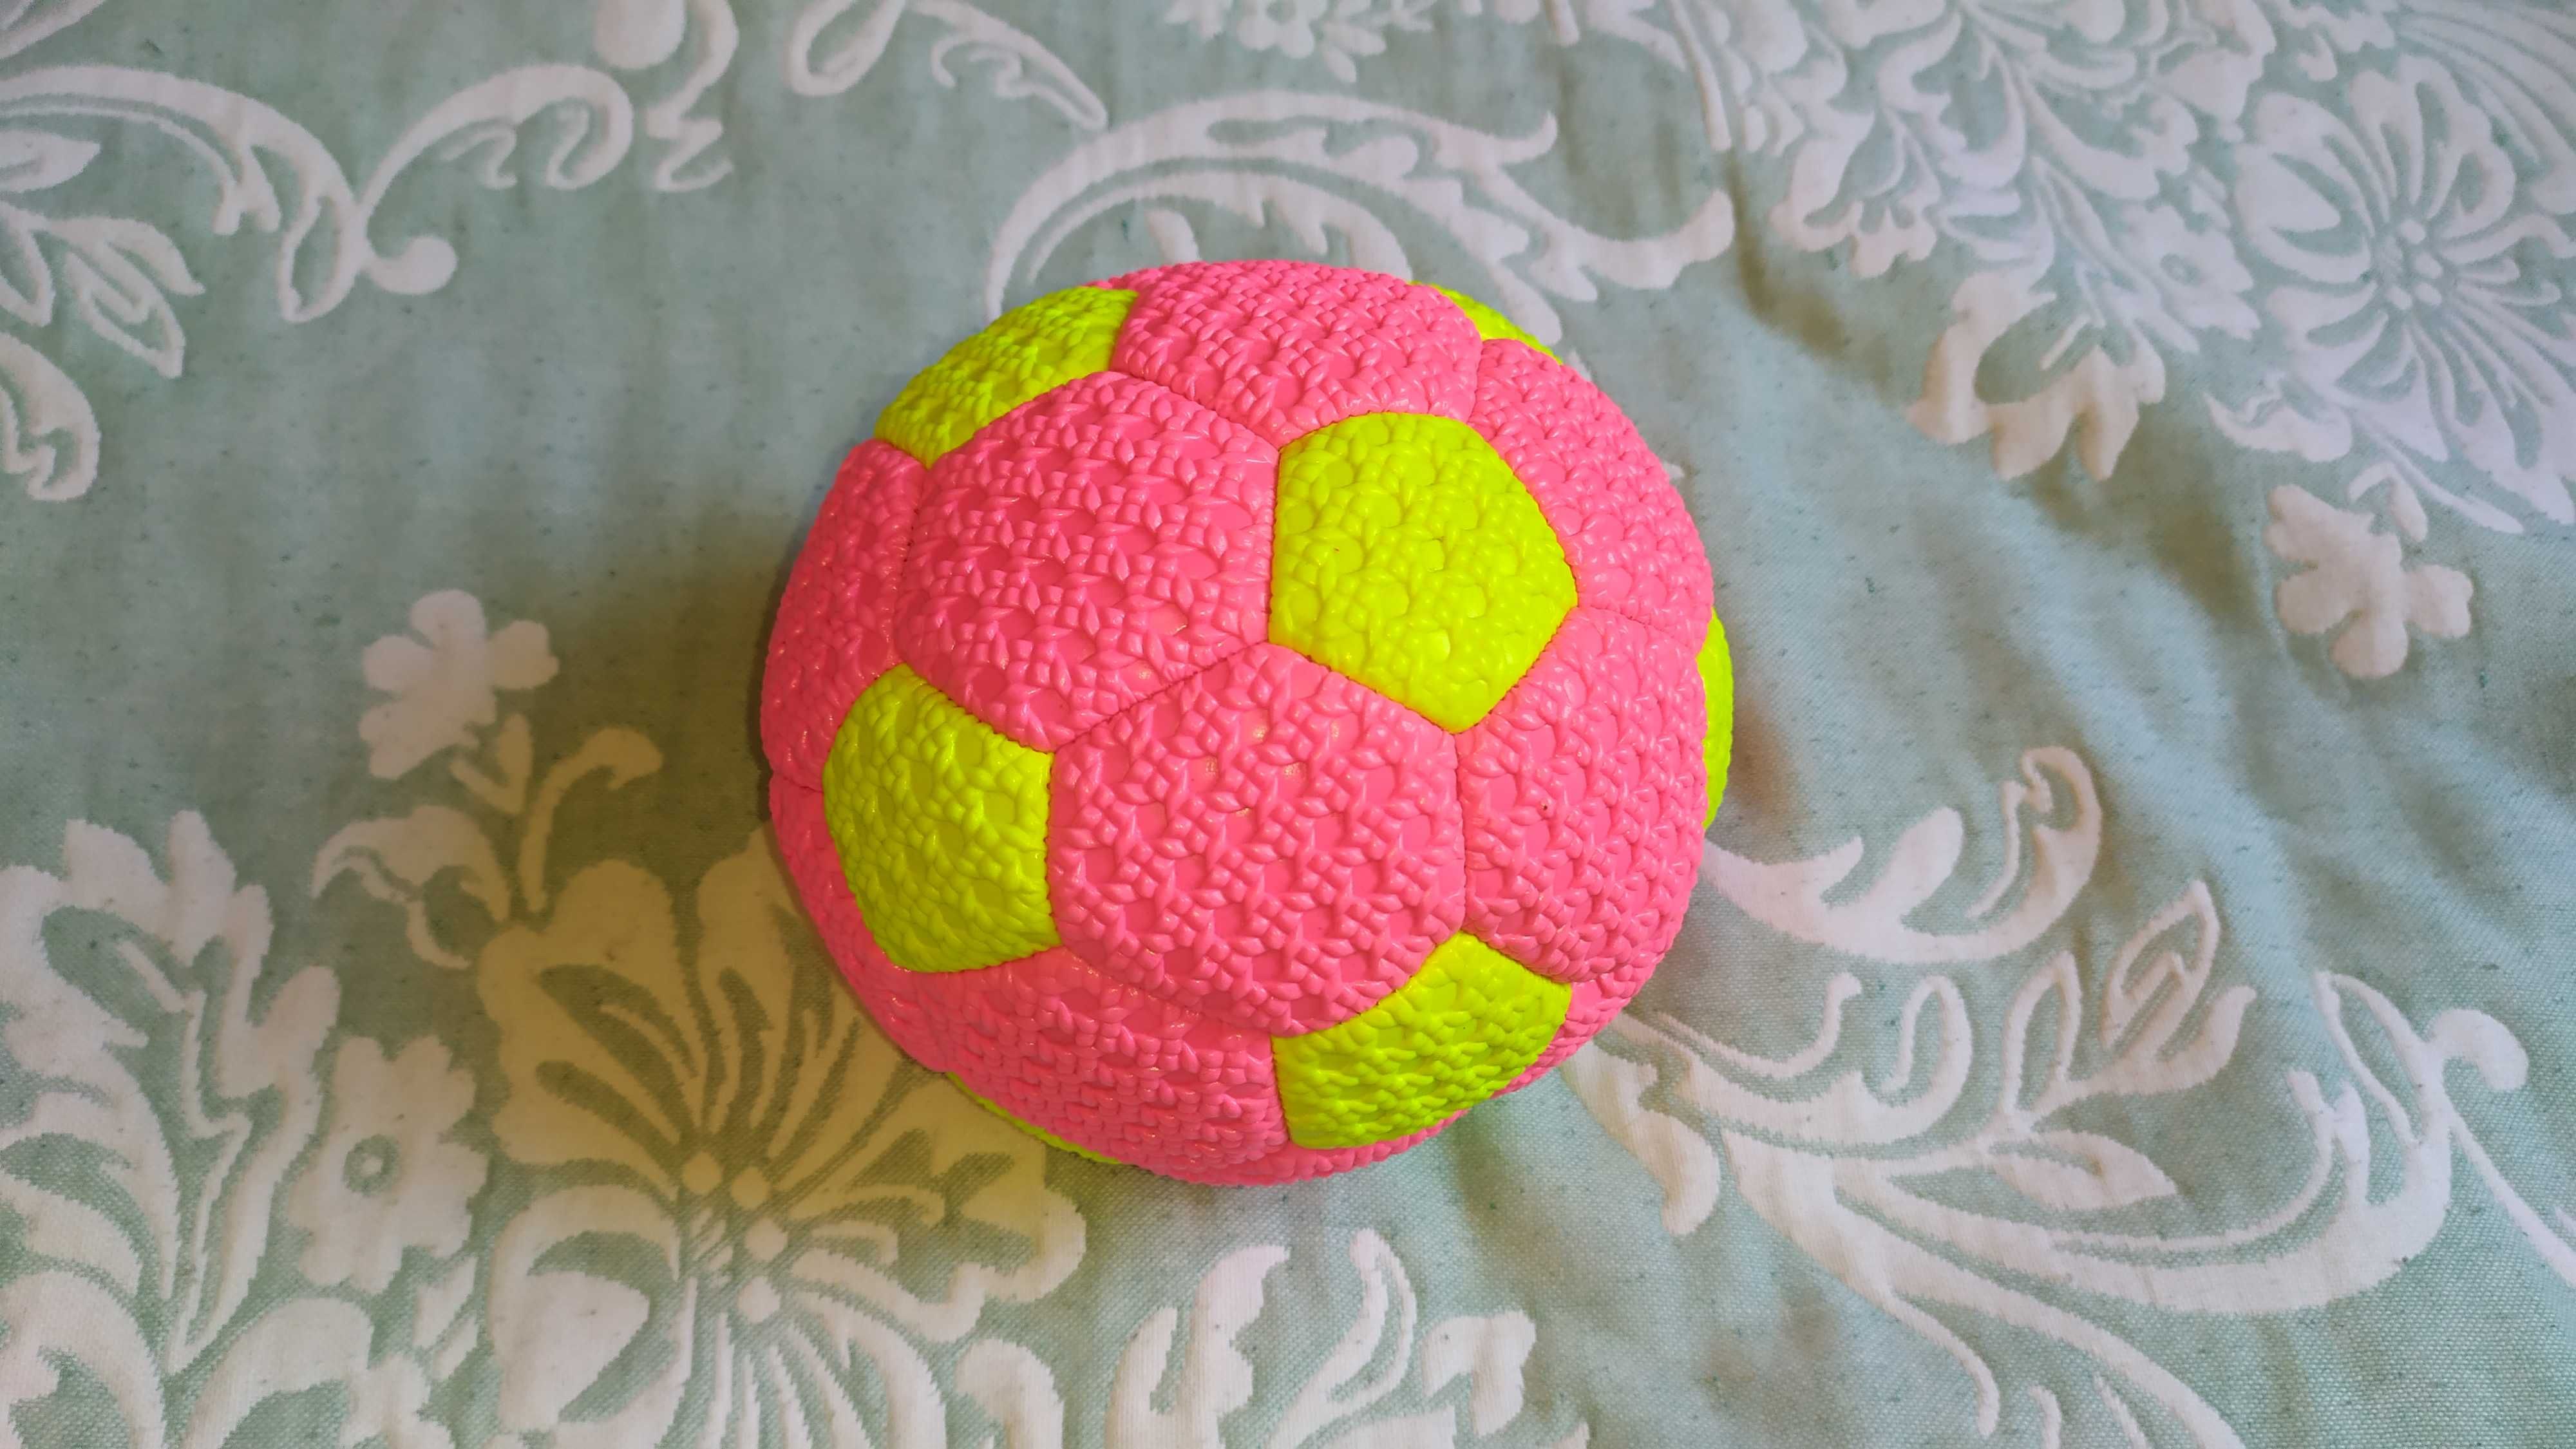 Гандбольный мячик, для игры в гандбол удобный хорошего качества